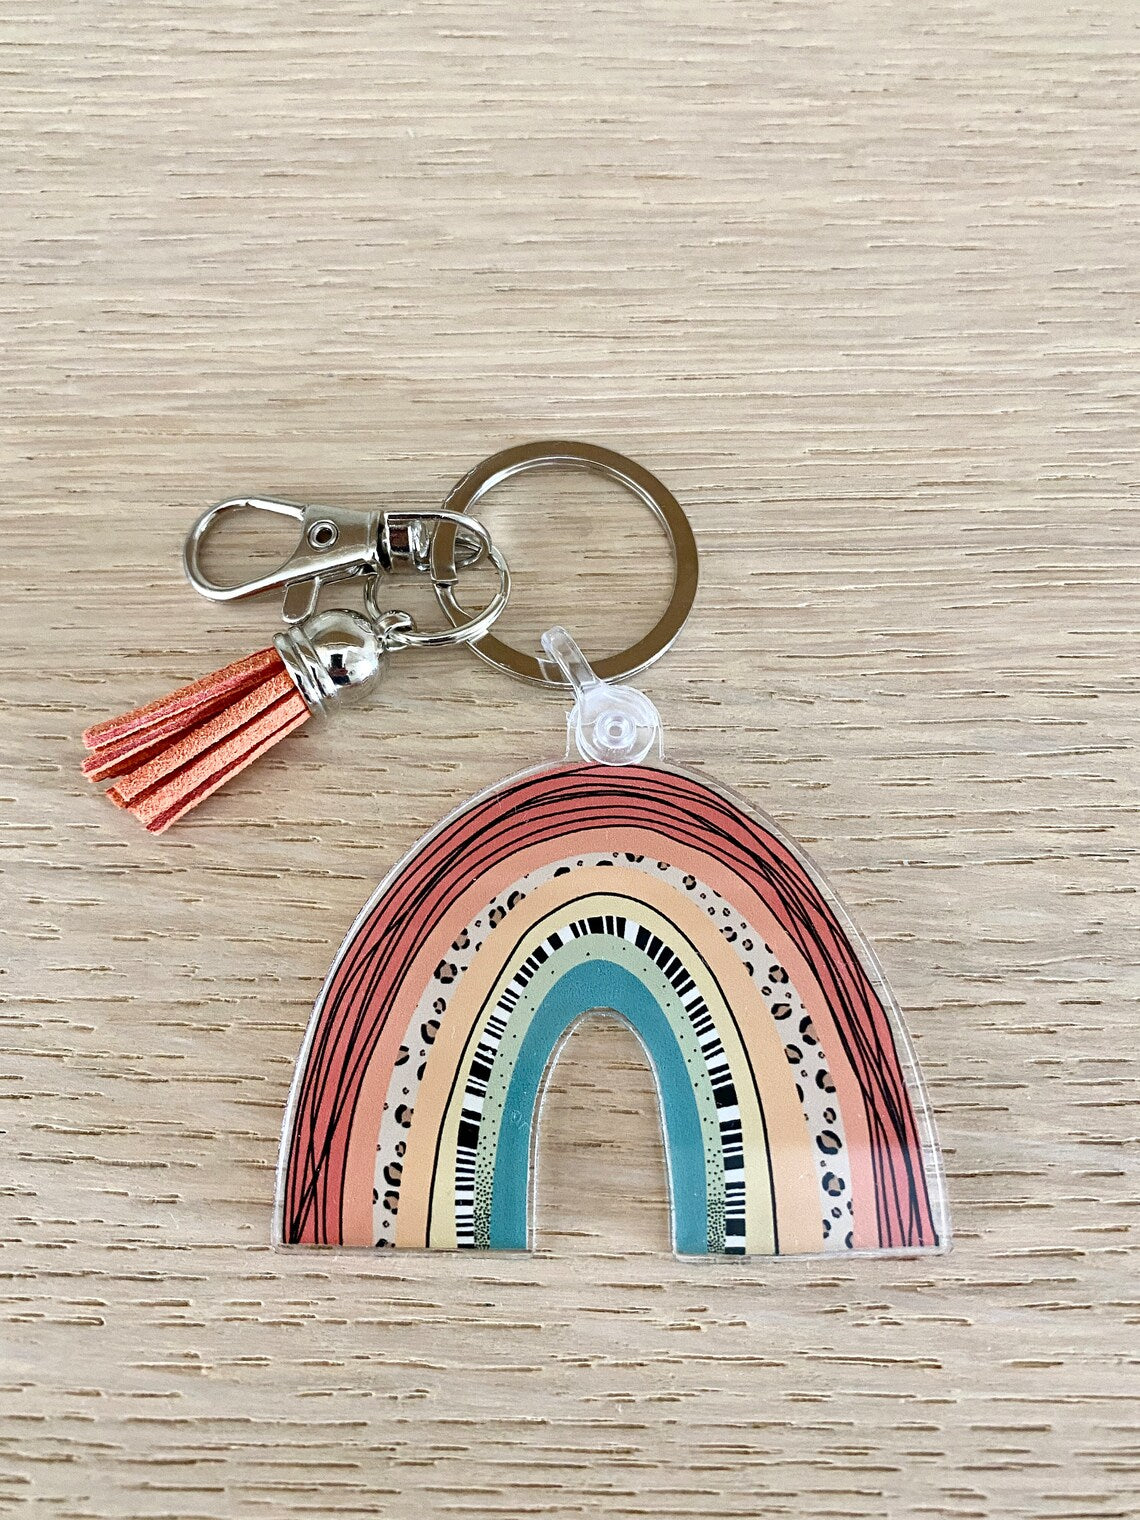 Rainbow Tassel Keychain